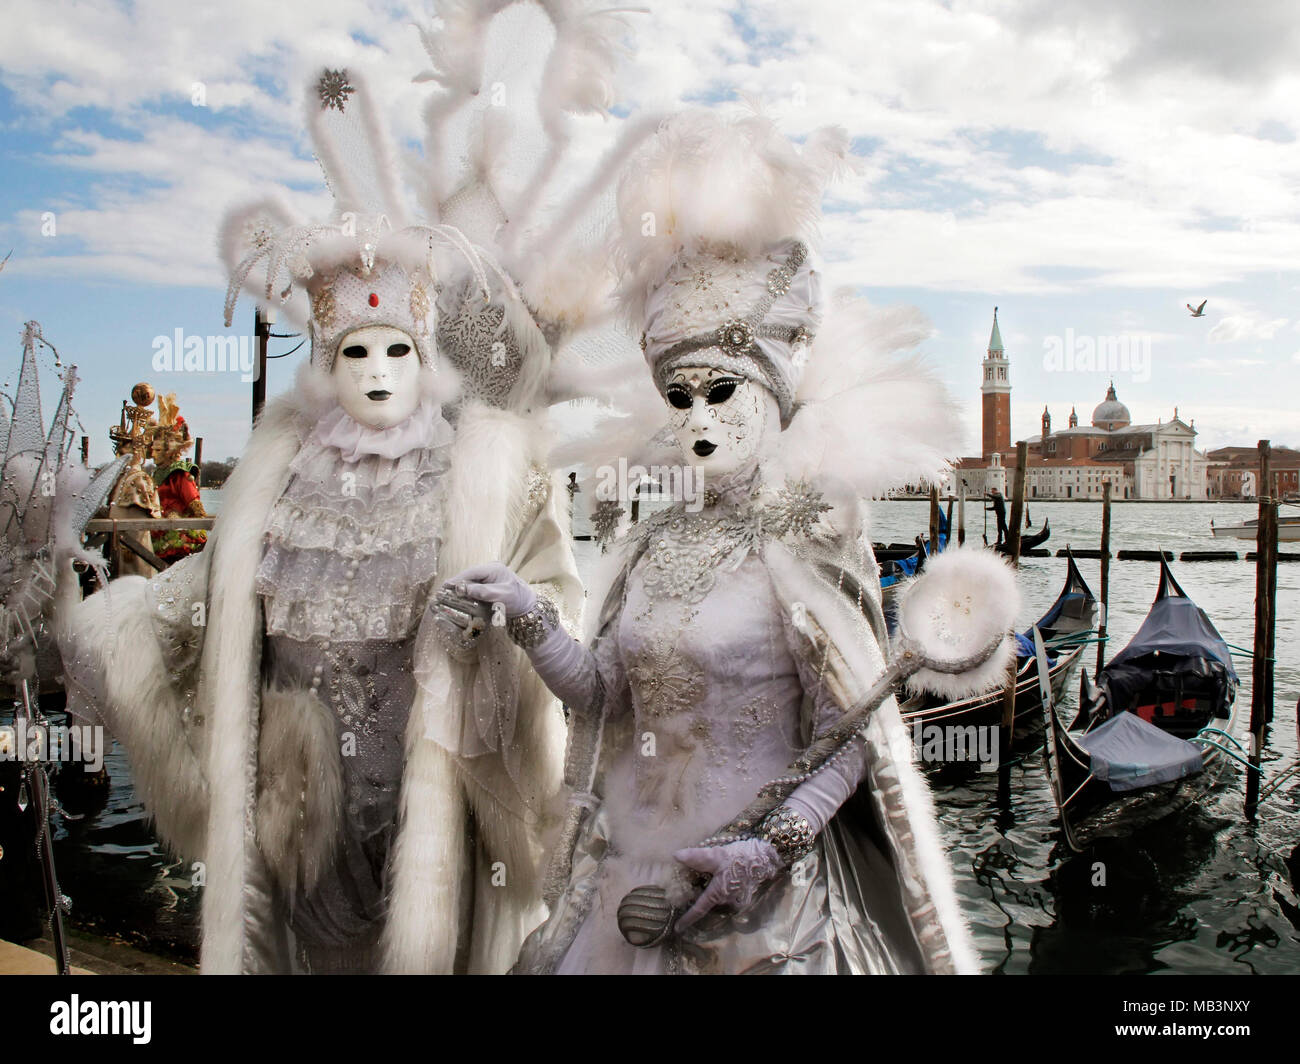 Couple in masks at Carnival, gondolas dock, and San Giorgio Maggiore Church in background, Venice, Italy Stock Photo